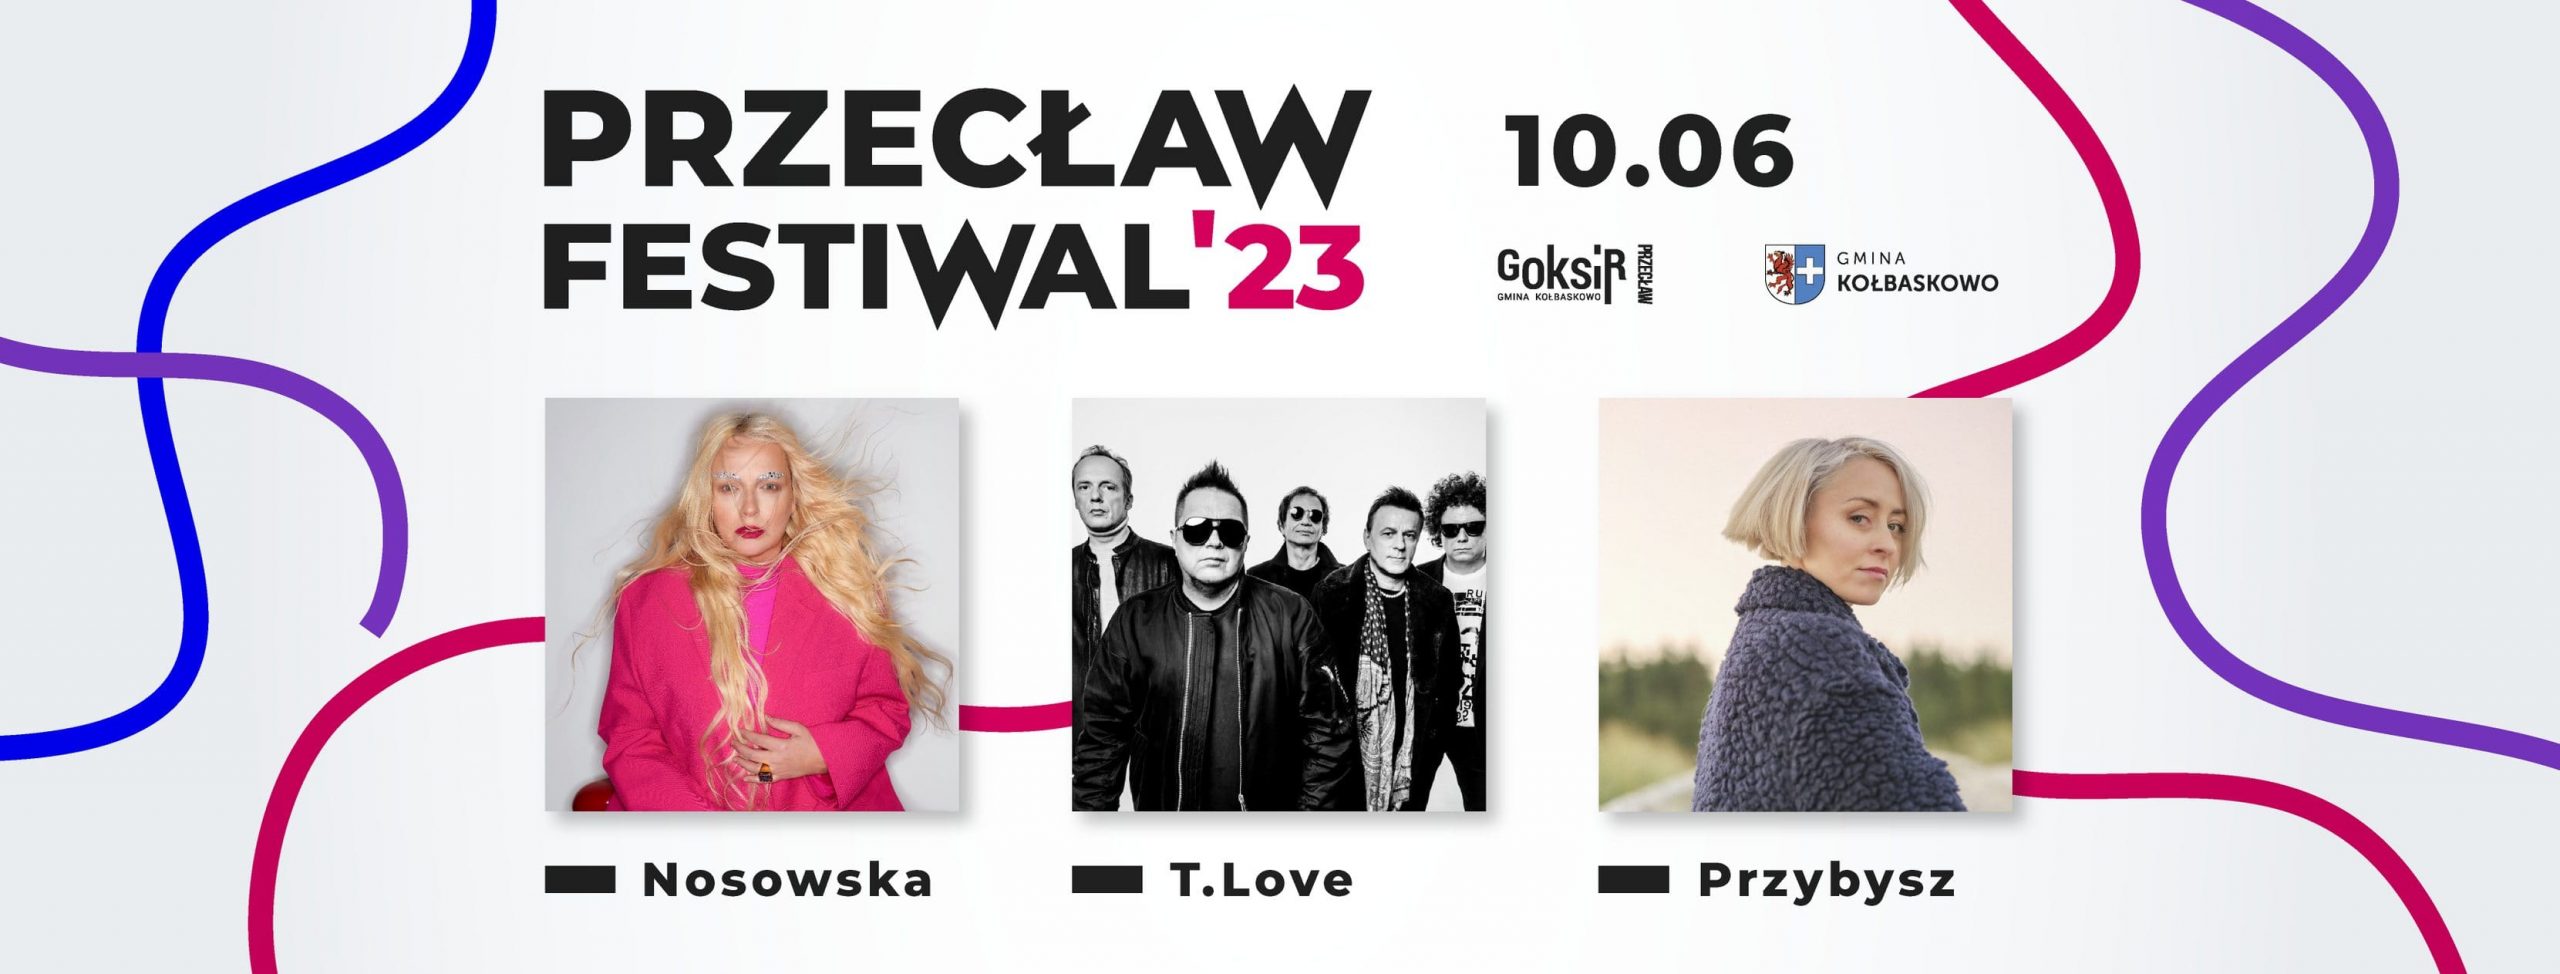 Przecław Festiwal’23